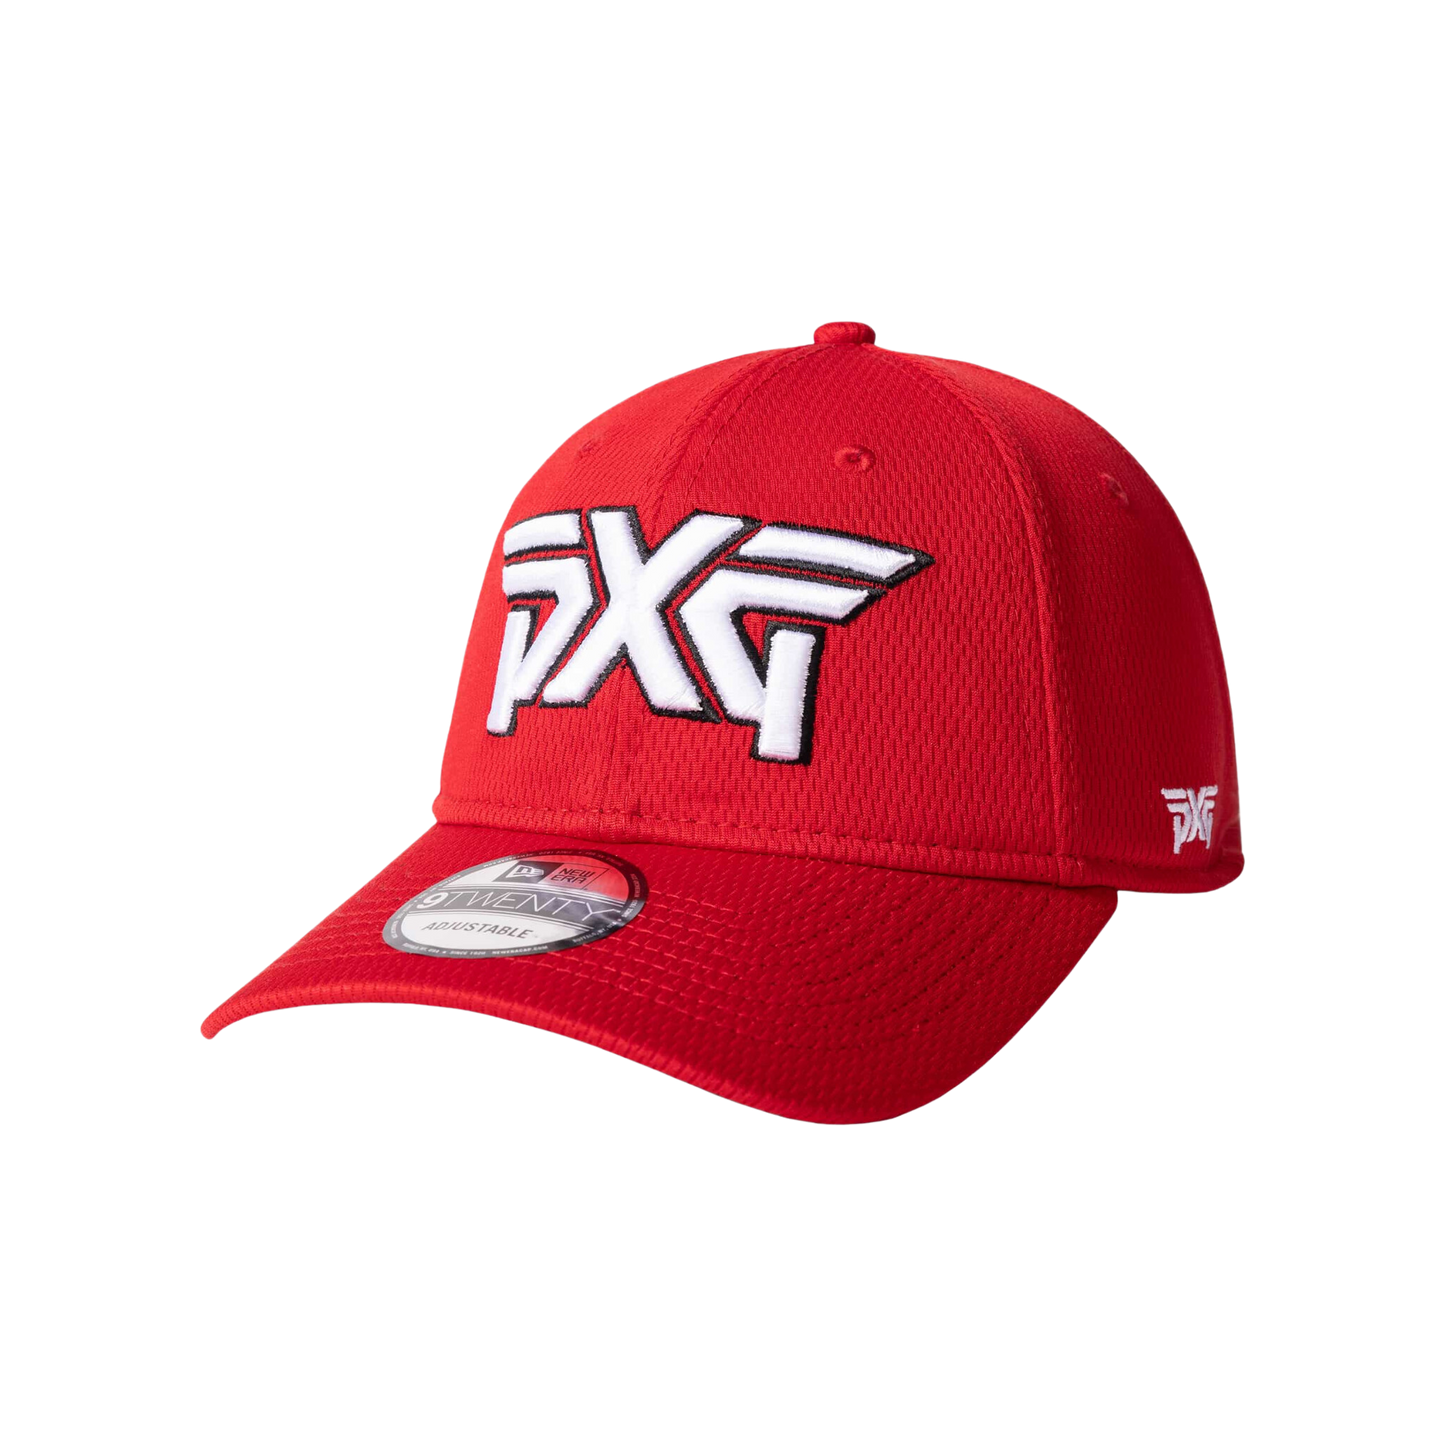 PXG Cincinnati Red/White/Black 920 Adjustable Cap